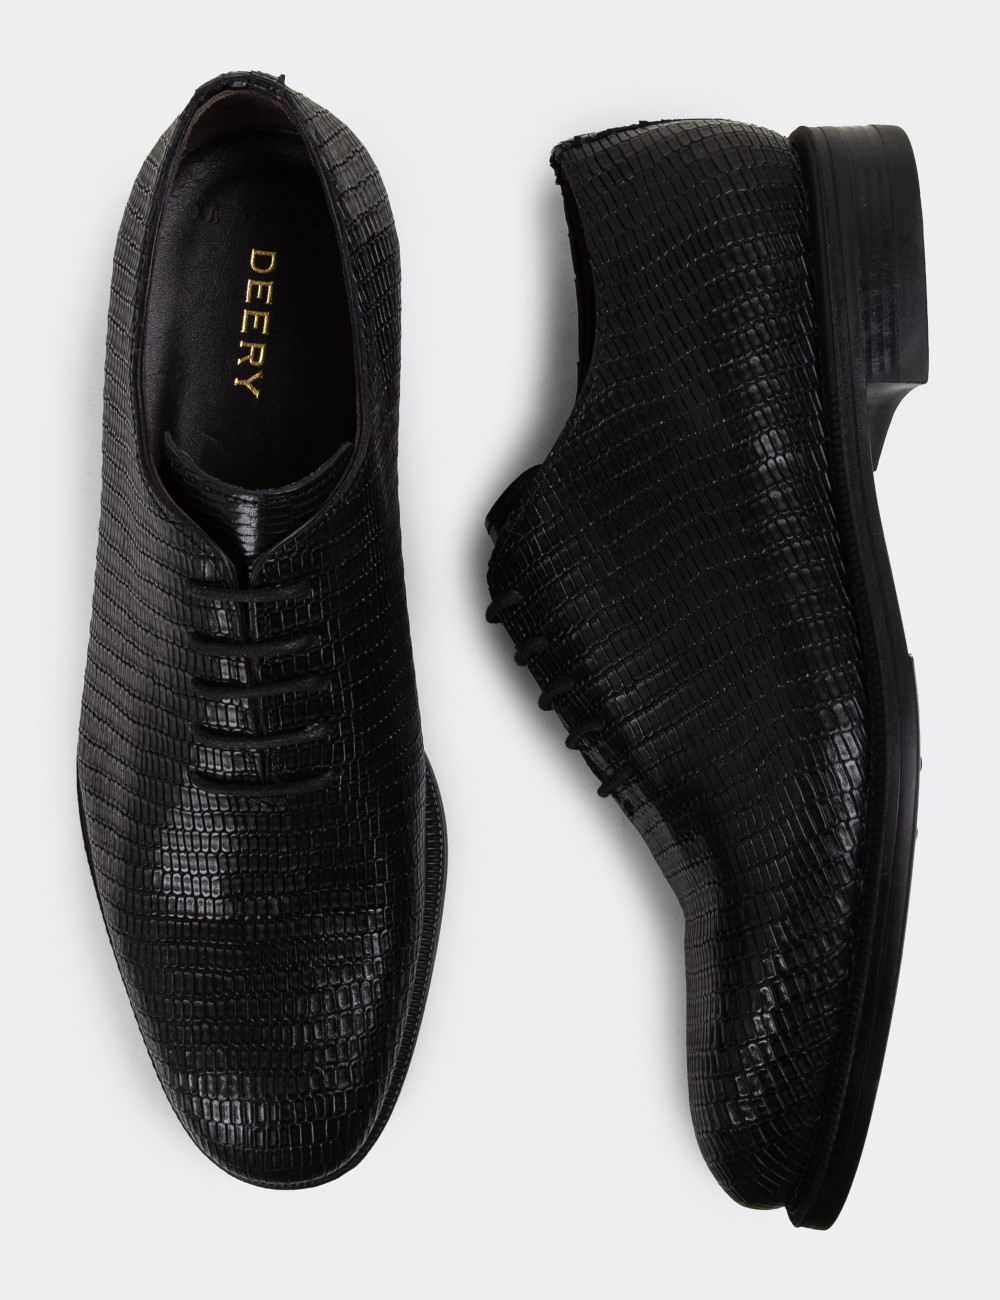 Hakiki Deri Siyah Özel Seri Erkek Klasik Ayakkabı - 01830MSYHC06